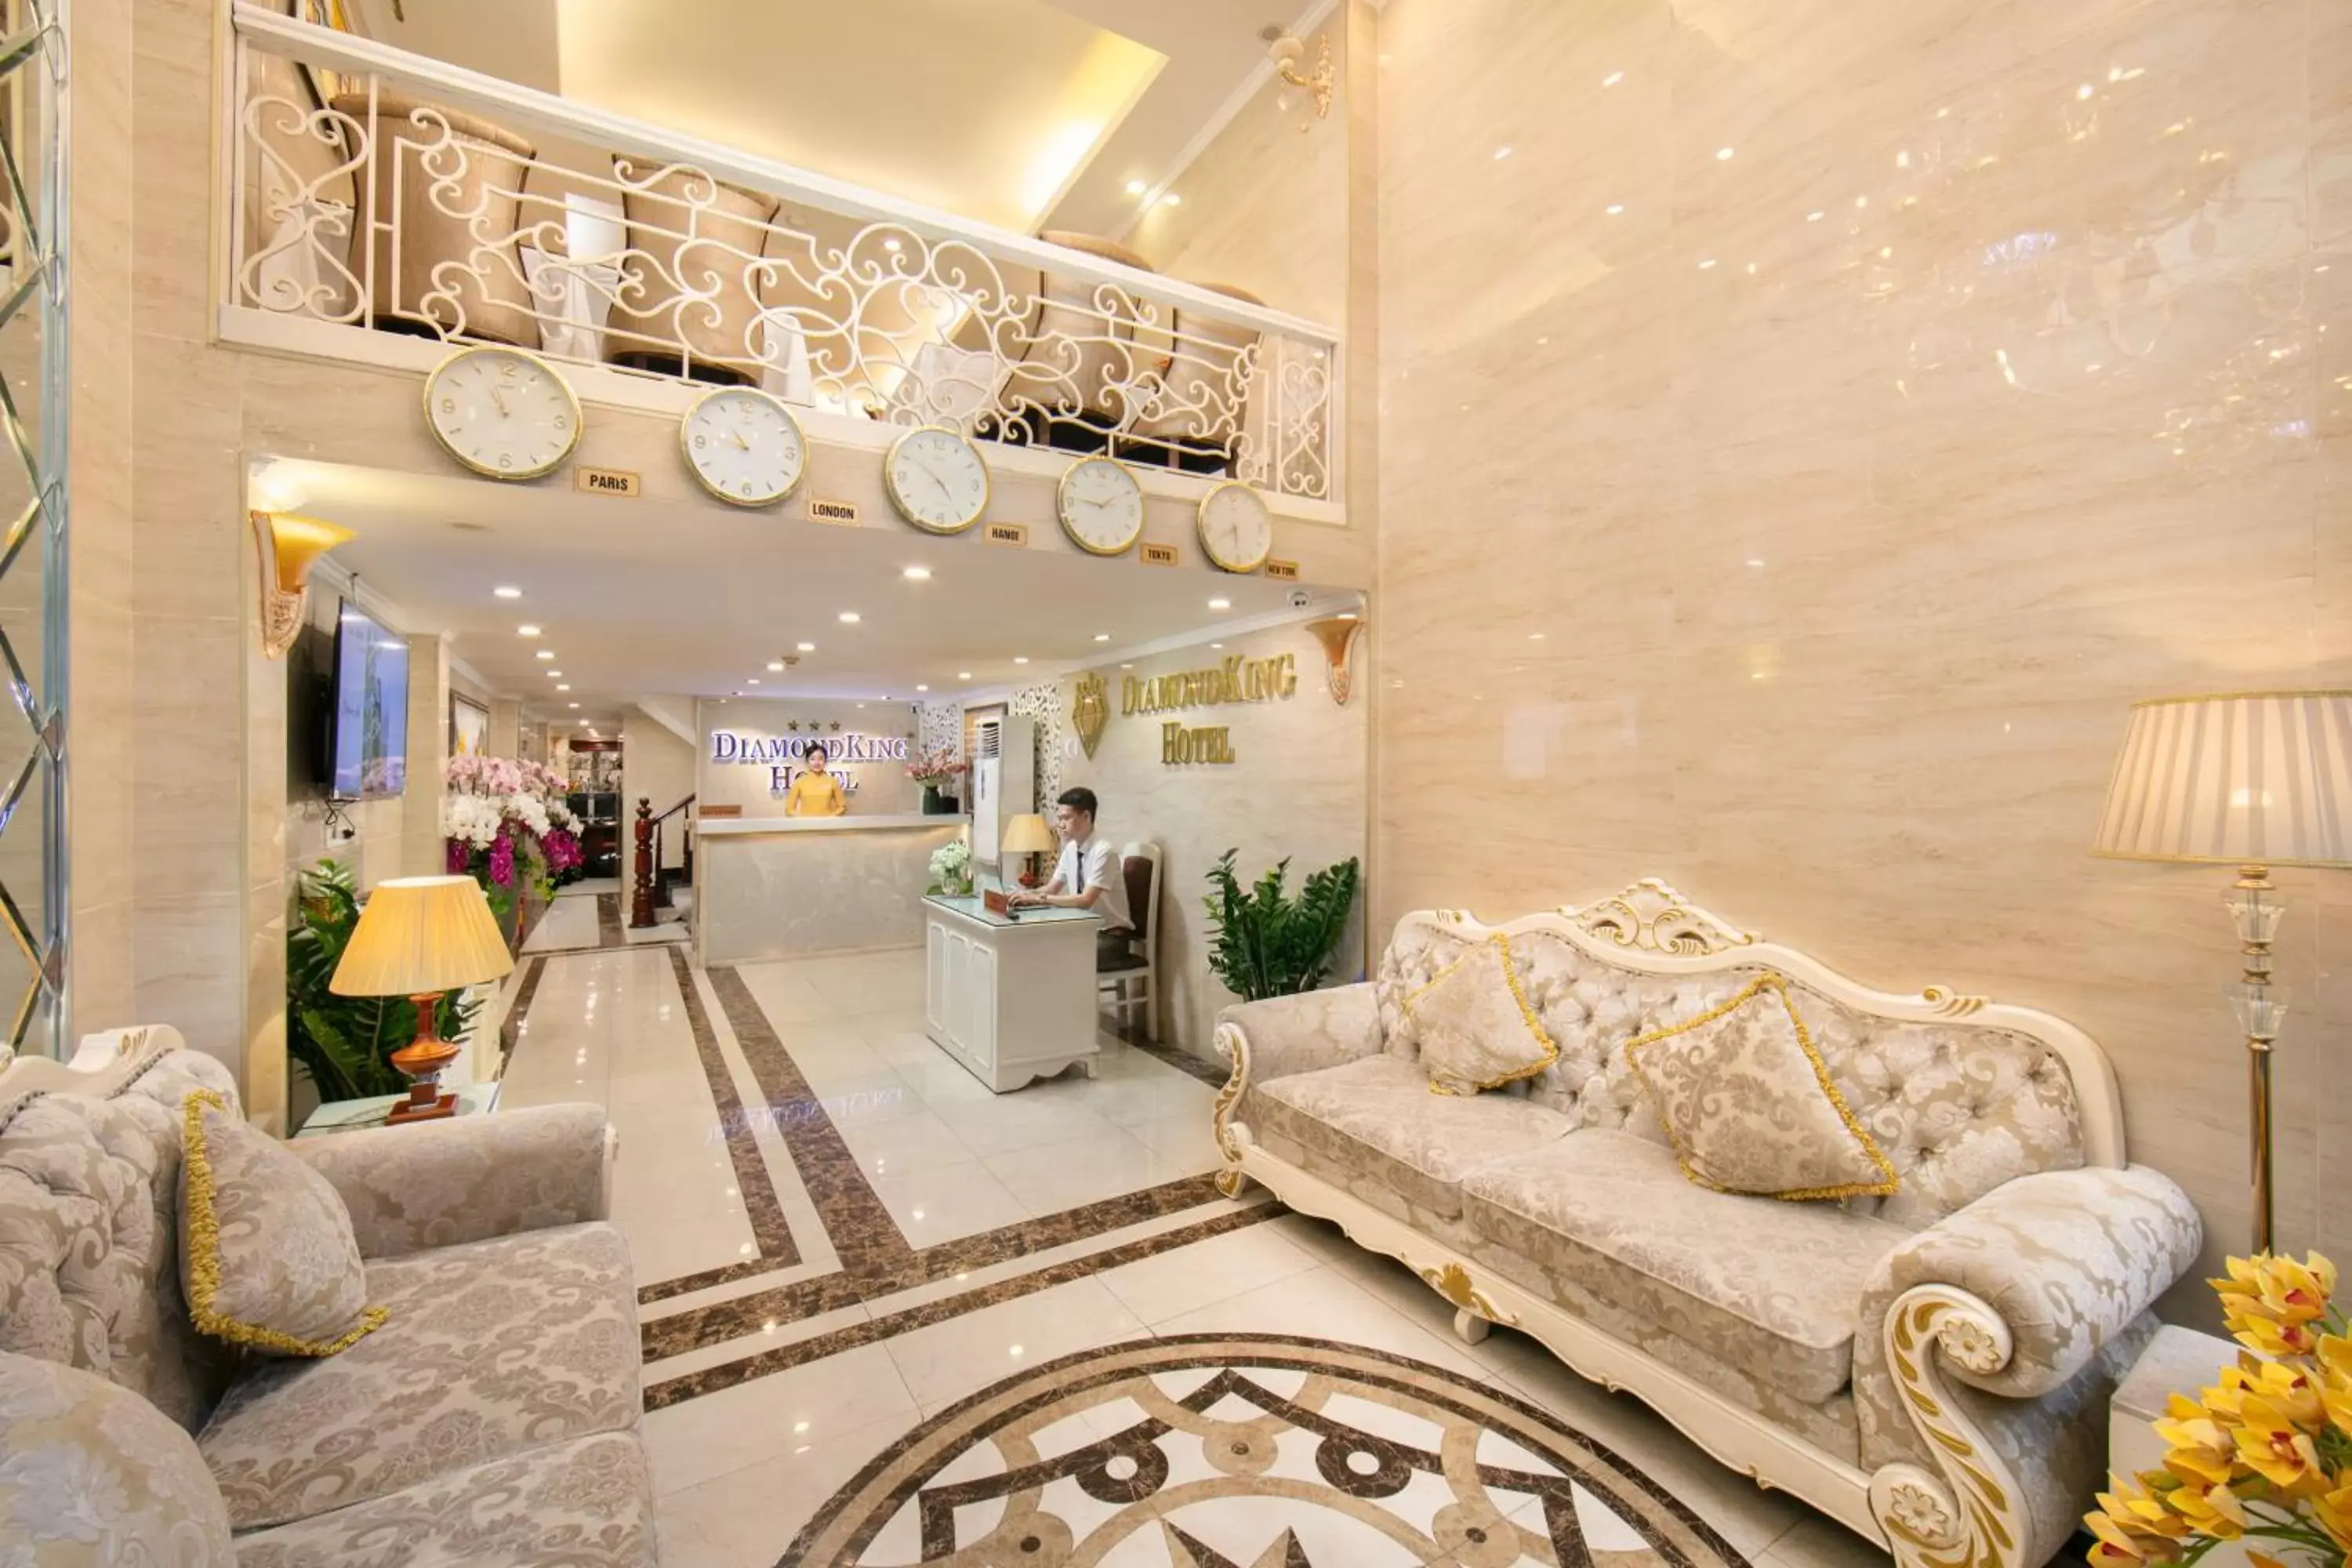 Lobby or reception, Lobby/Reception in Hanoi Diamond King Hotel & Travel